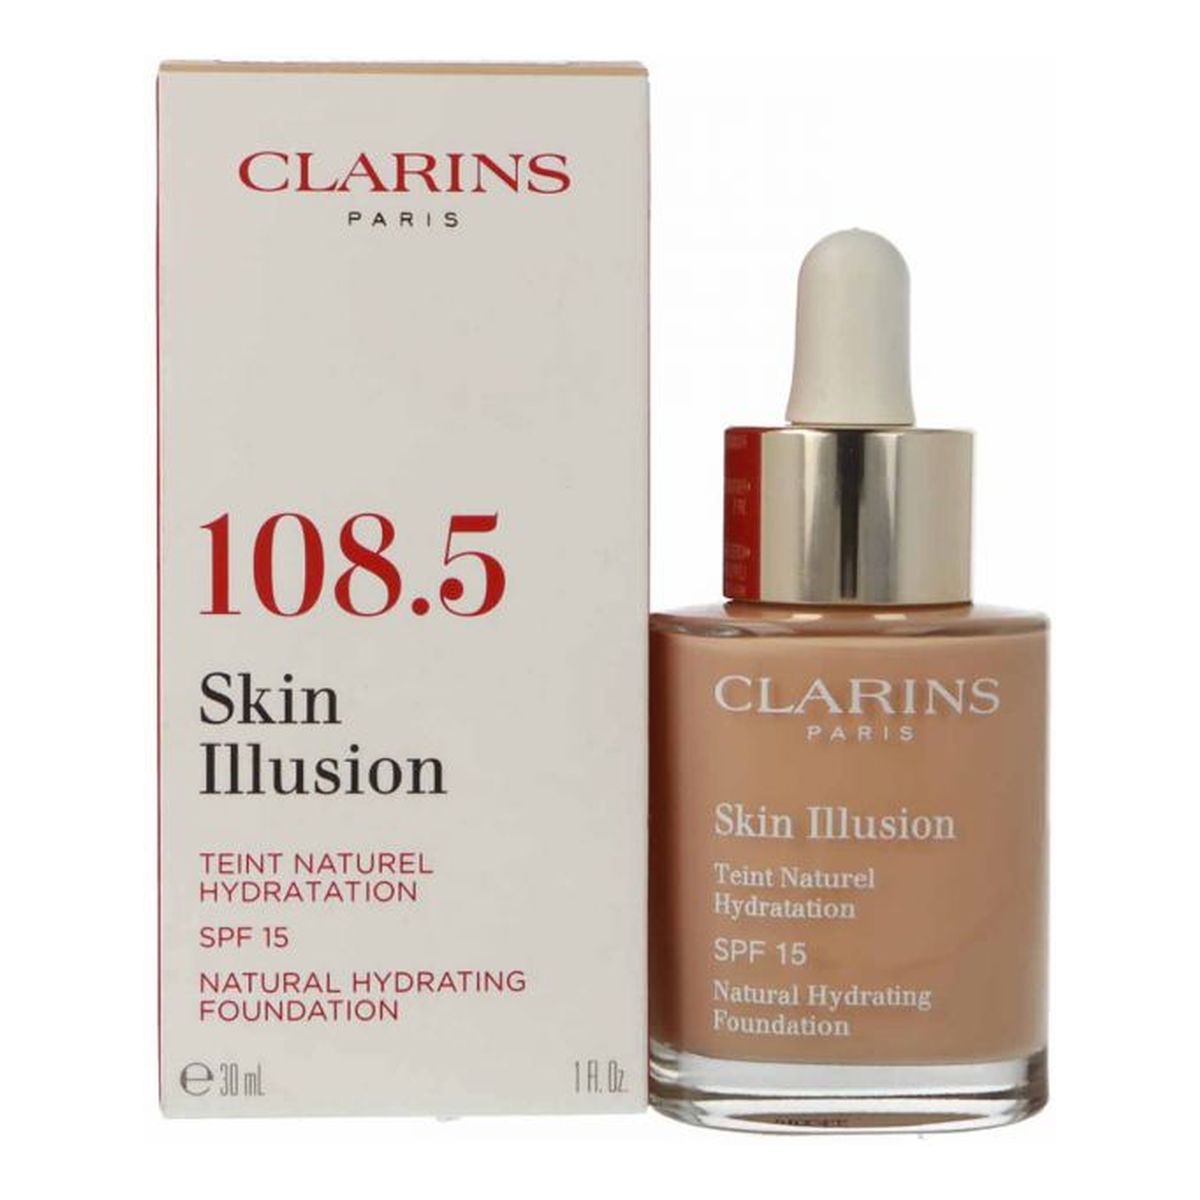 Clarins Skin Illusion Foundation Nawilżający podkład do twarzy SPF 15 30ml